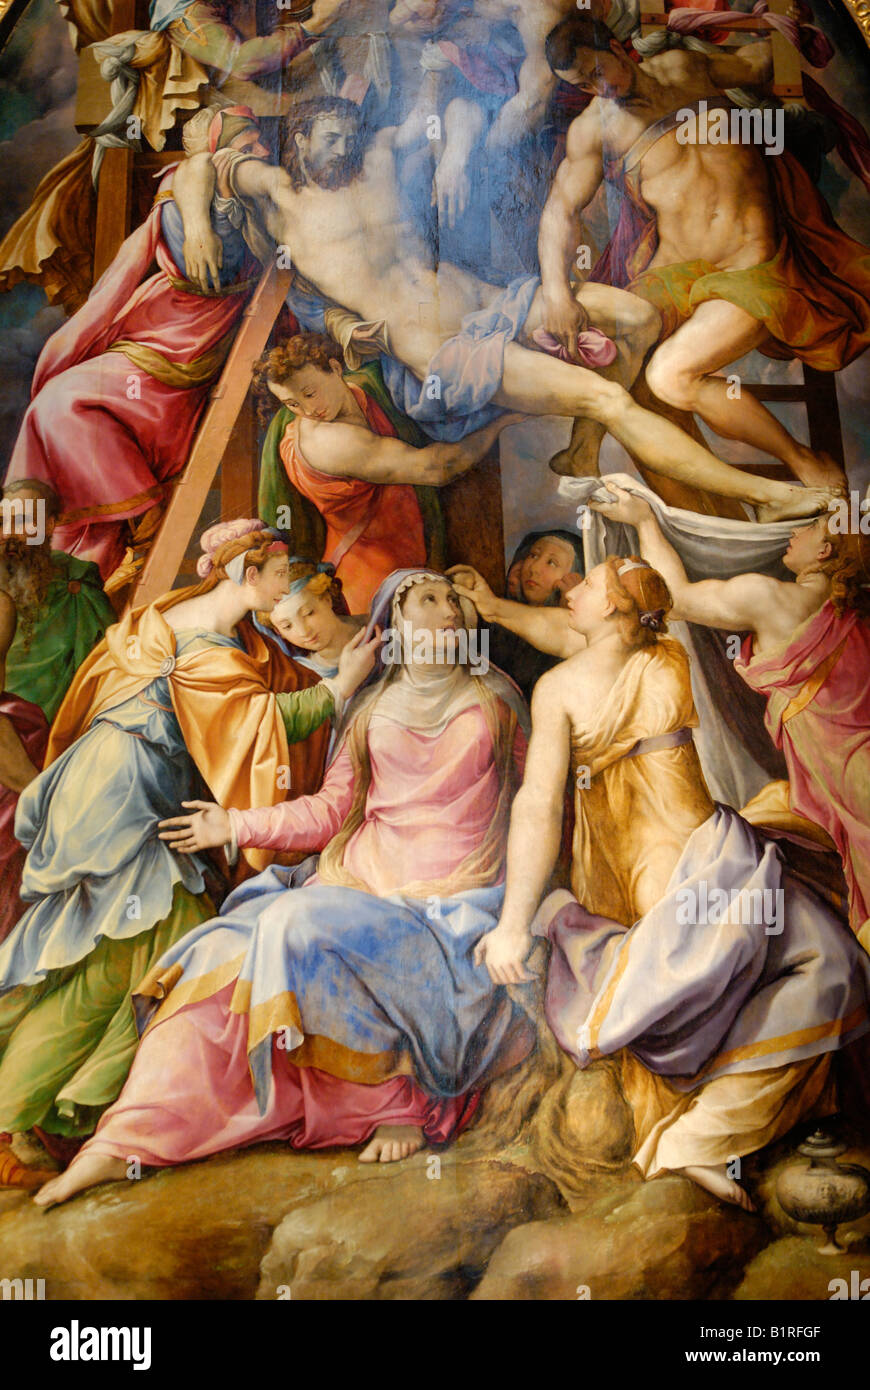 La peinture de la Renaissance au musée de Santa Croce, UNESCO World Heritage site, Florence, Toscane, Italie, Europe Banque D'Images